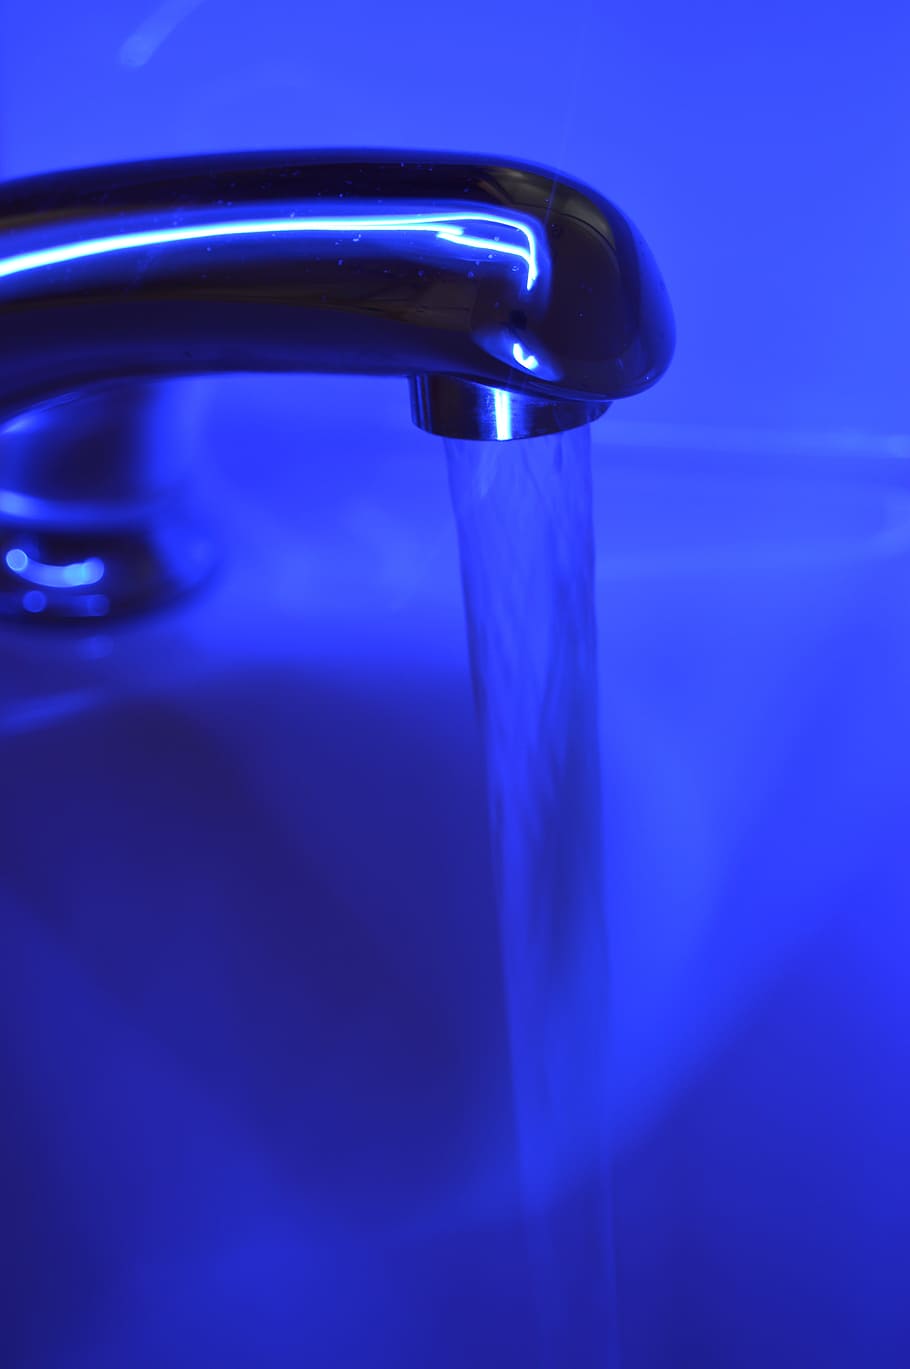 blue, faucet, water, tap, bathroom, home, sink, tub, bath, bathtub